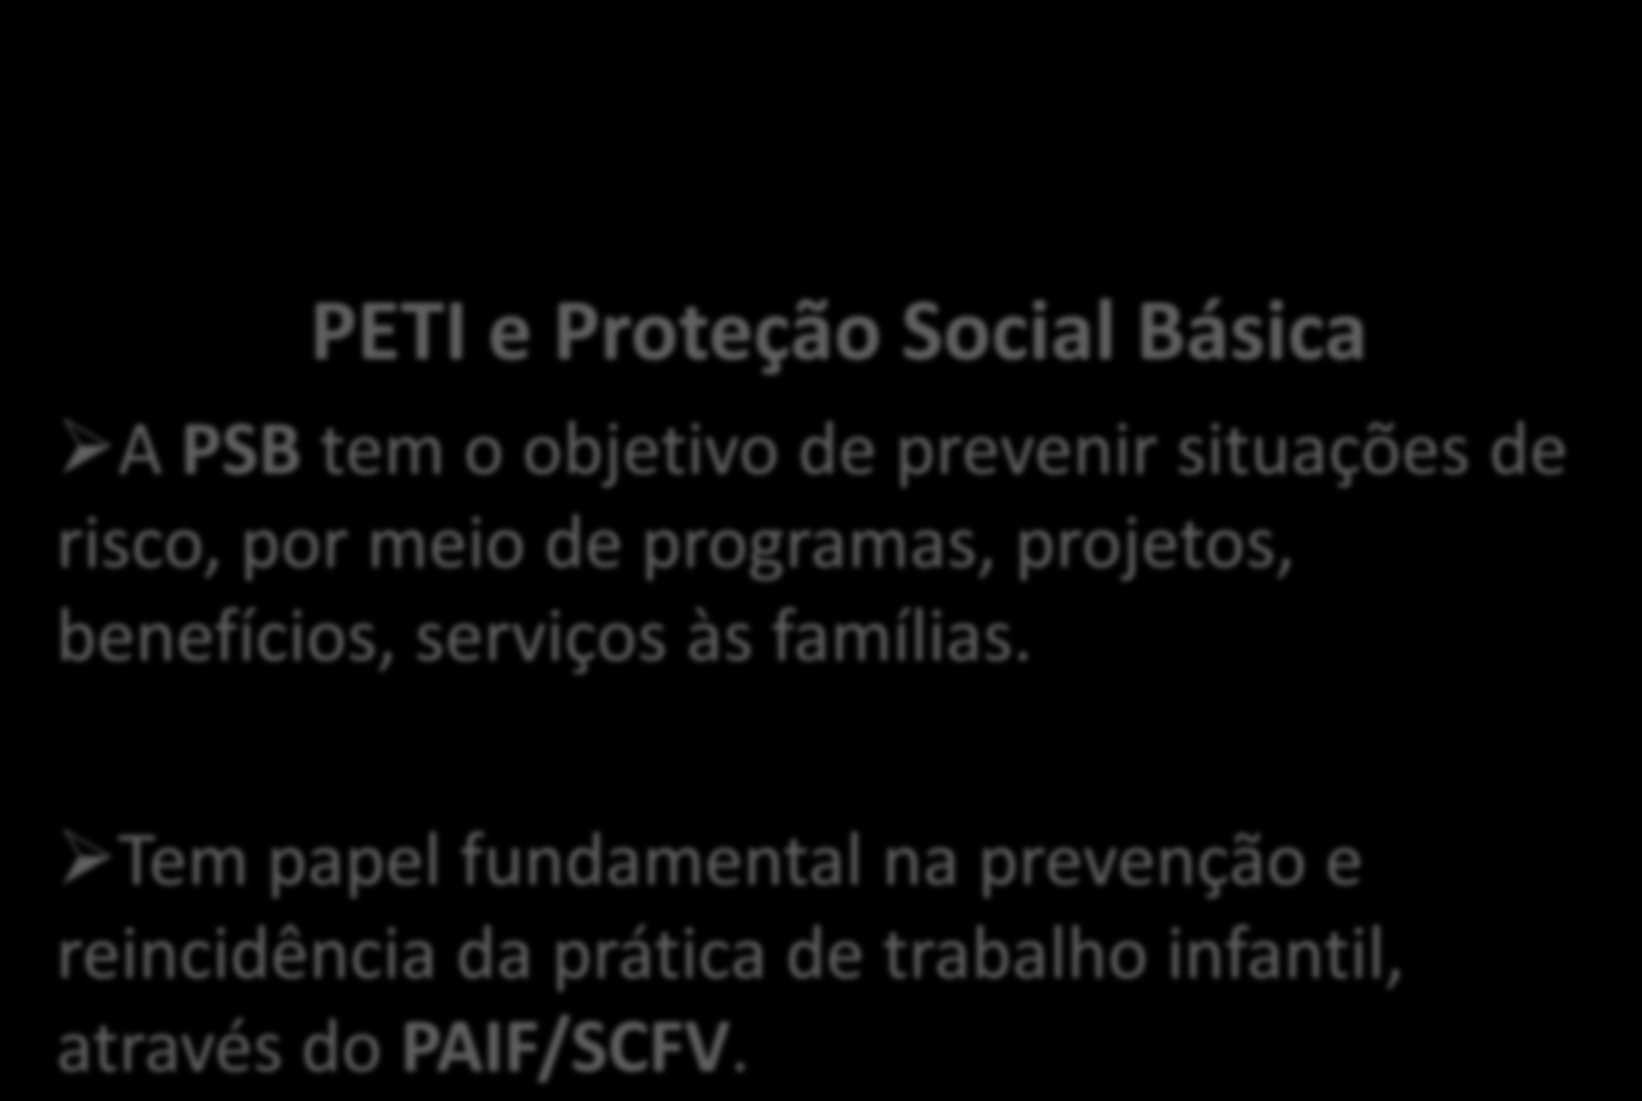 PETI e Proteção Social Básica A PSB tem o objetivo de prevenir situações de risco, por meio de programas, projetos,